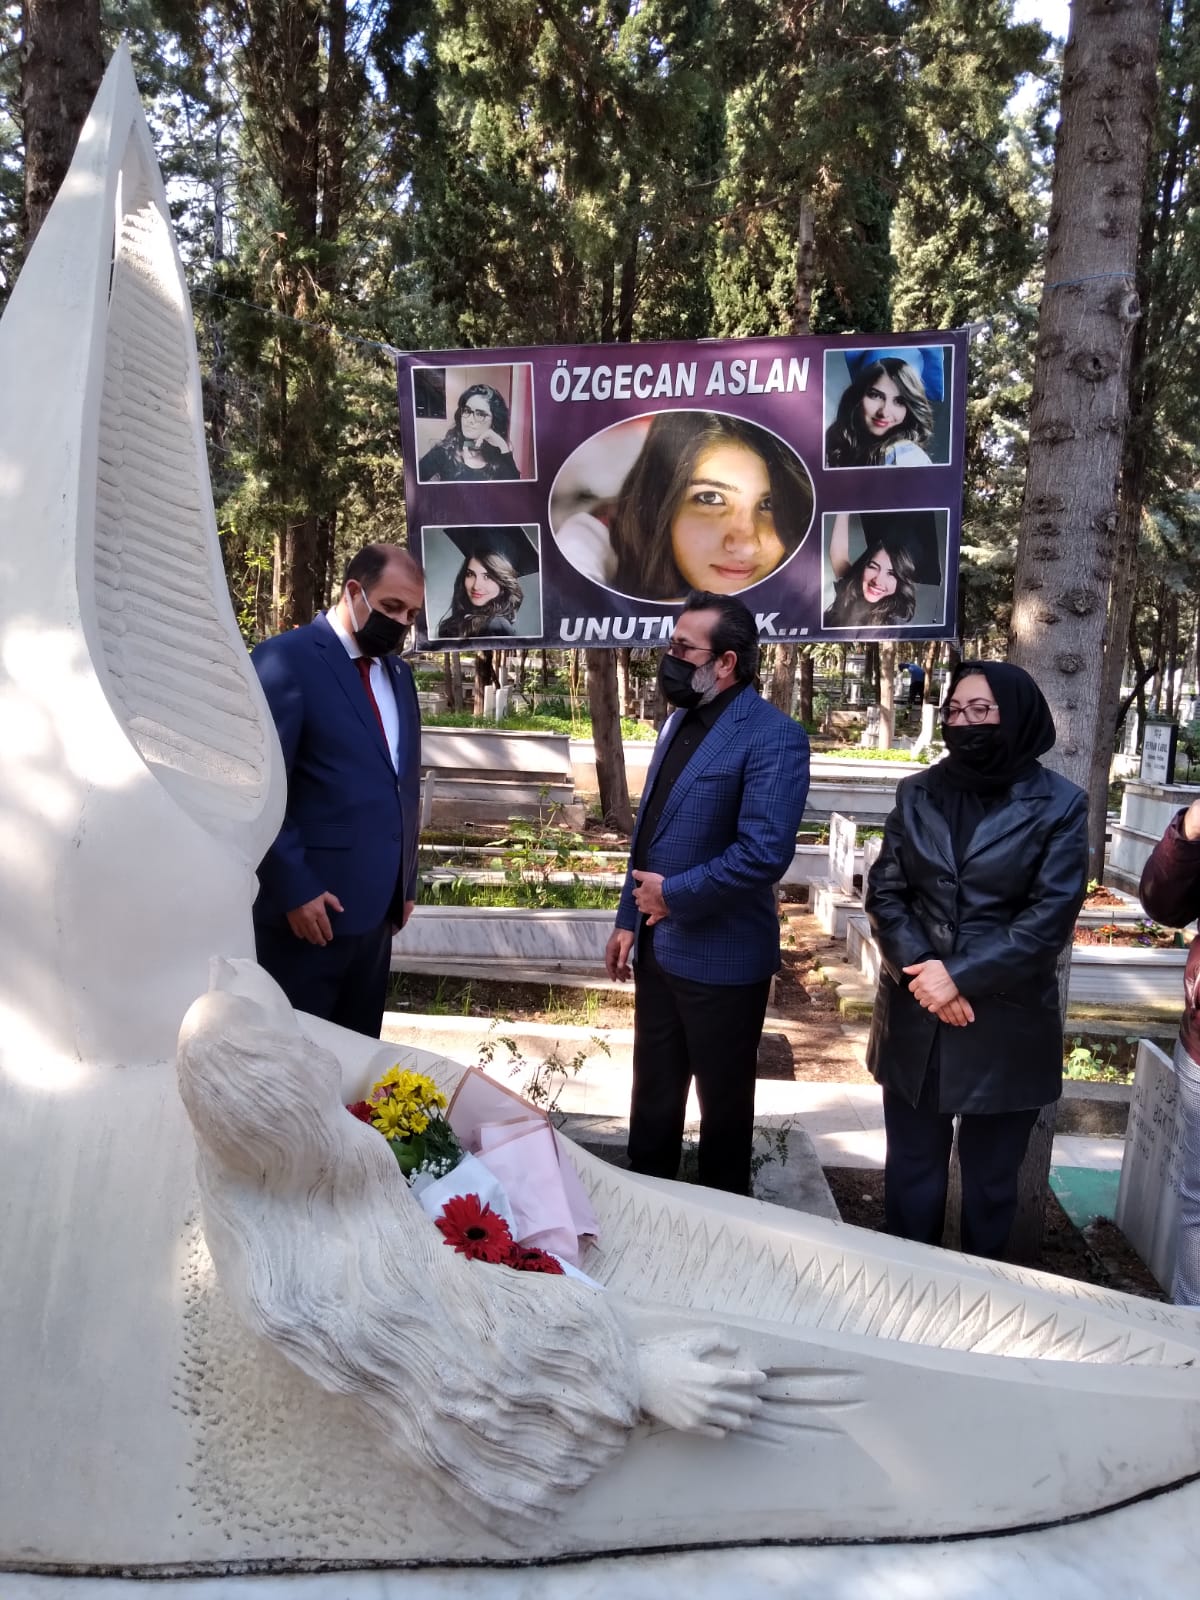 Mersin teşkilatı olarak Özgecan Aslan'ın aramızdan ayrılışinin 6. yılında mezarı başında saygı ve rahmetle andık. Ailesine sabırlar diledik.